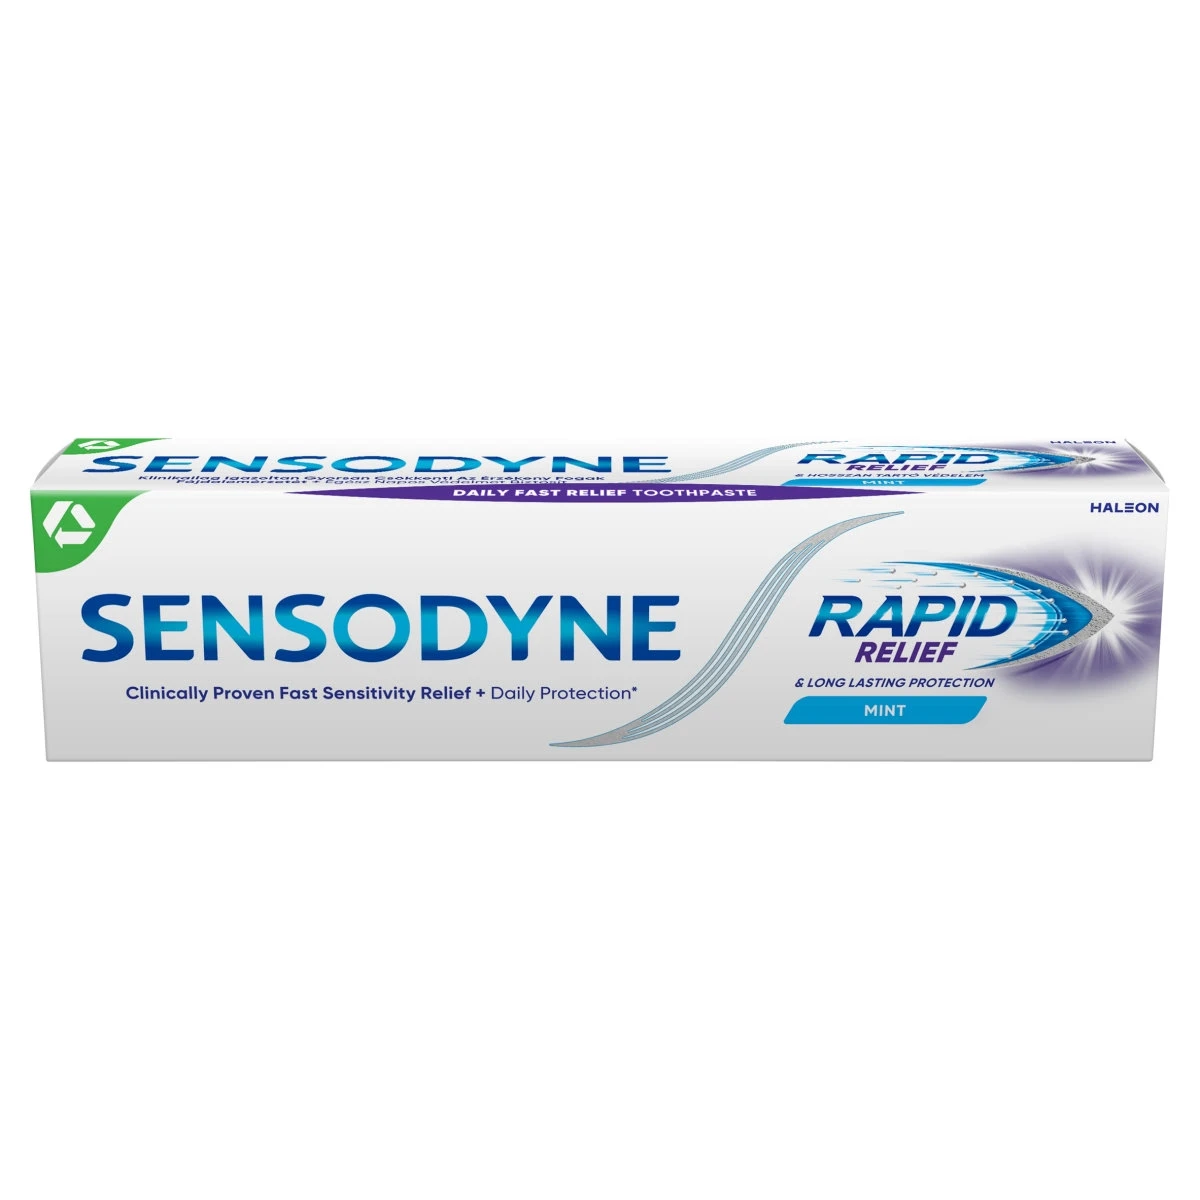 Sensodyne Rapid fogkrém 75 ml